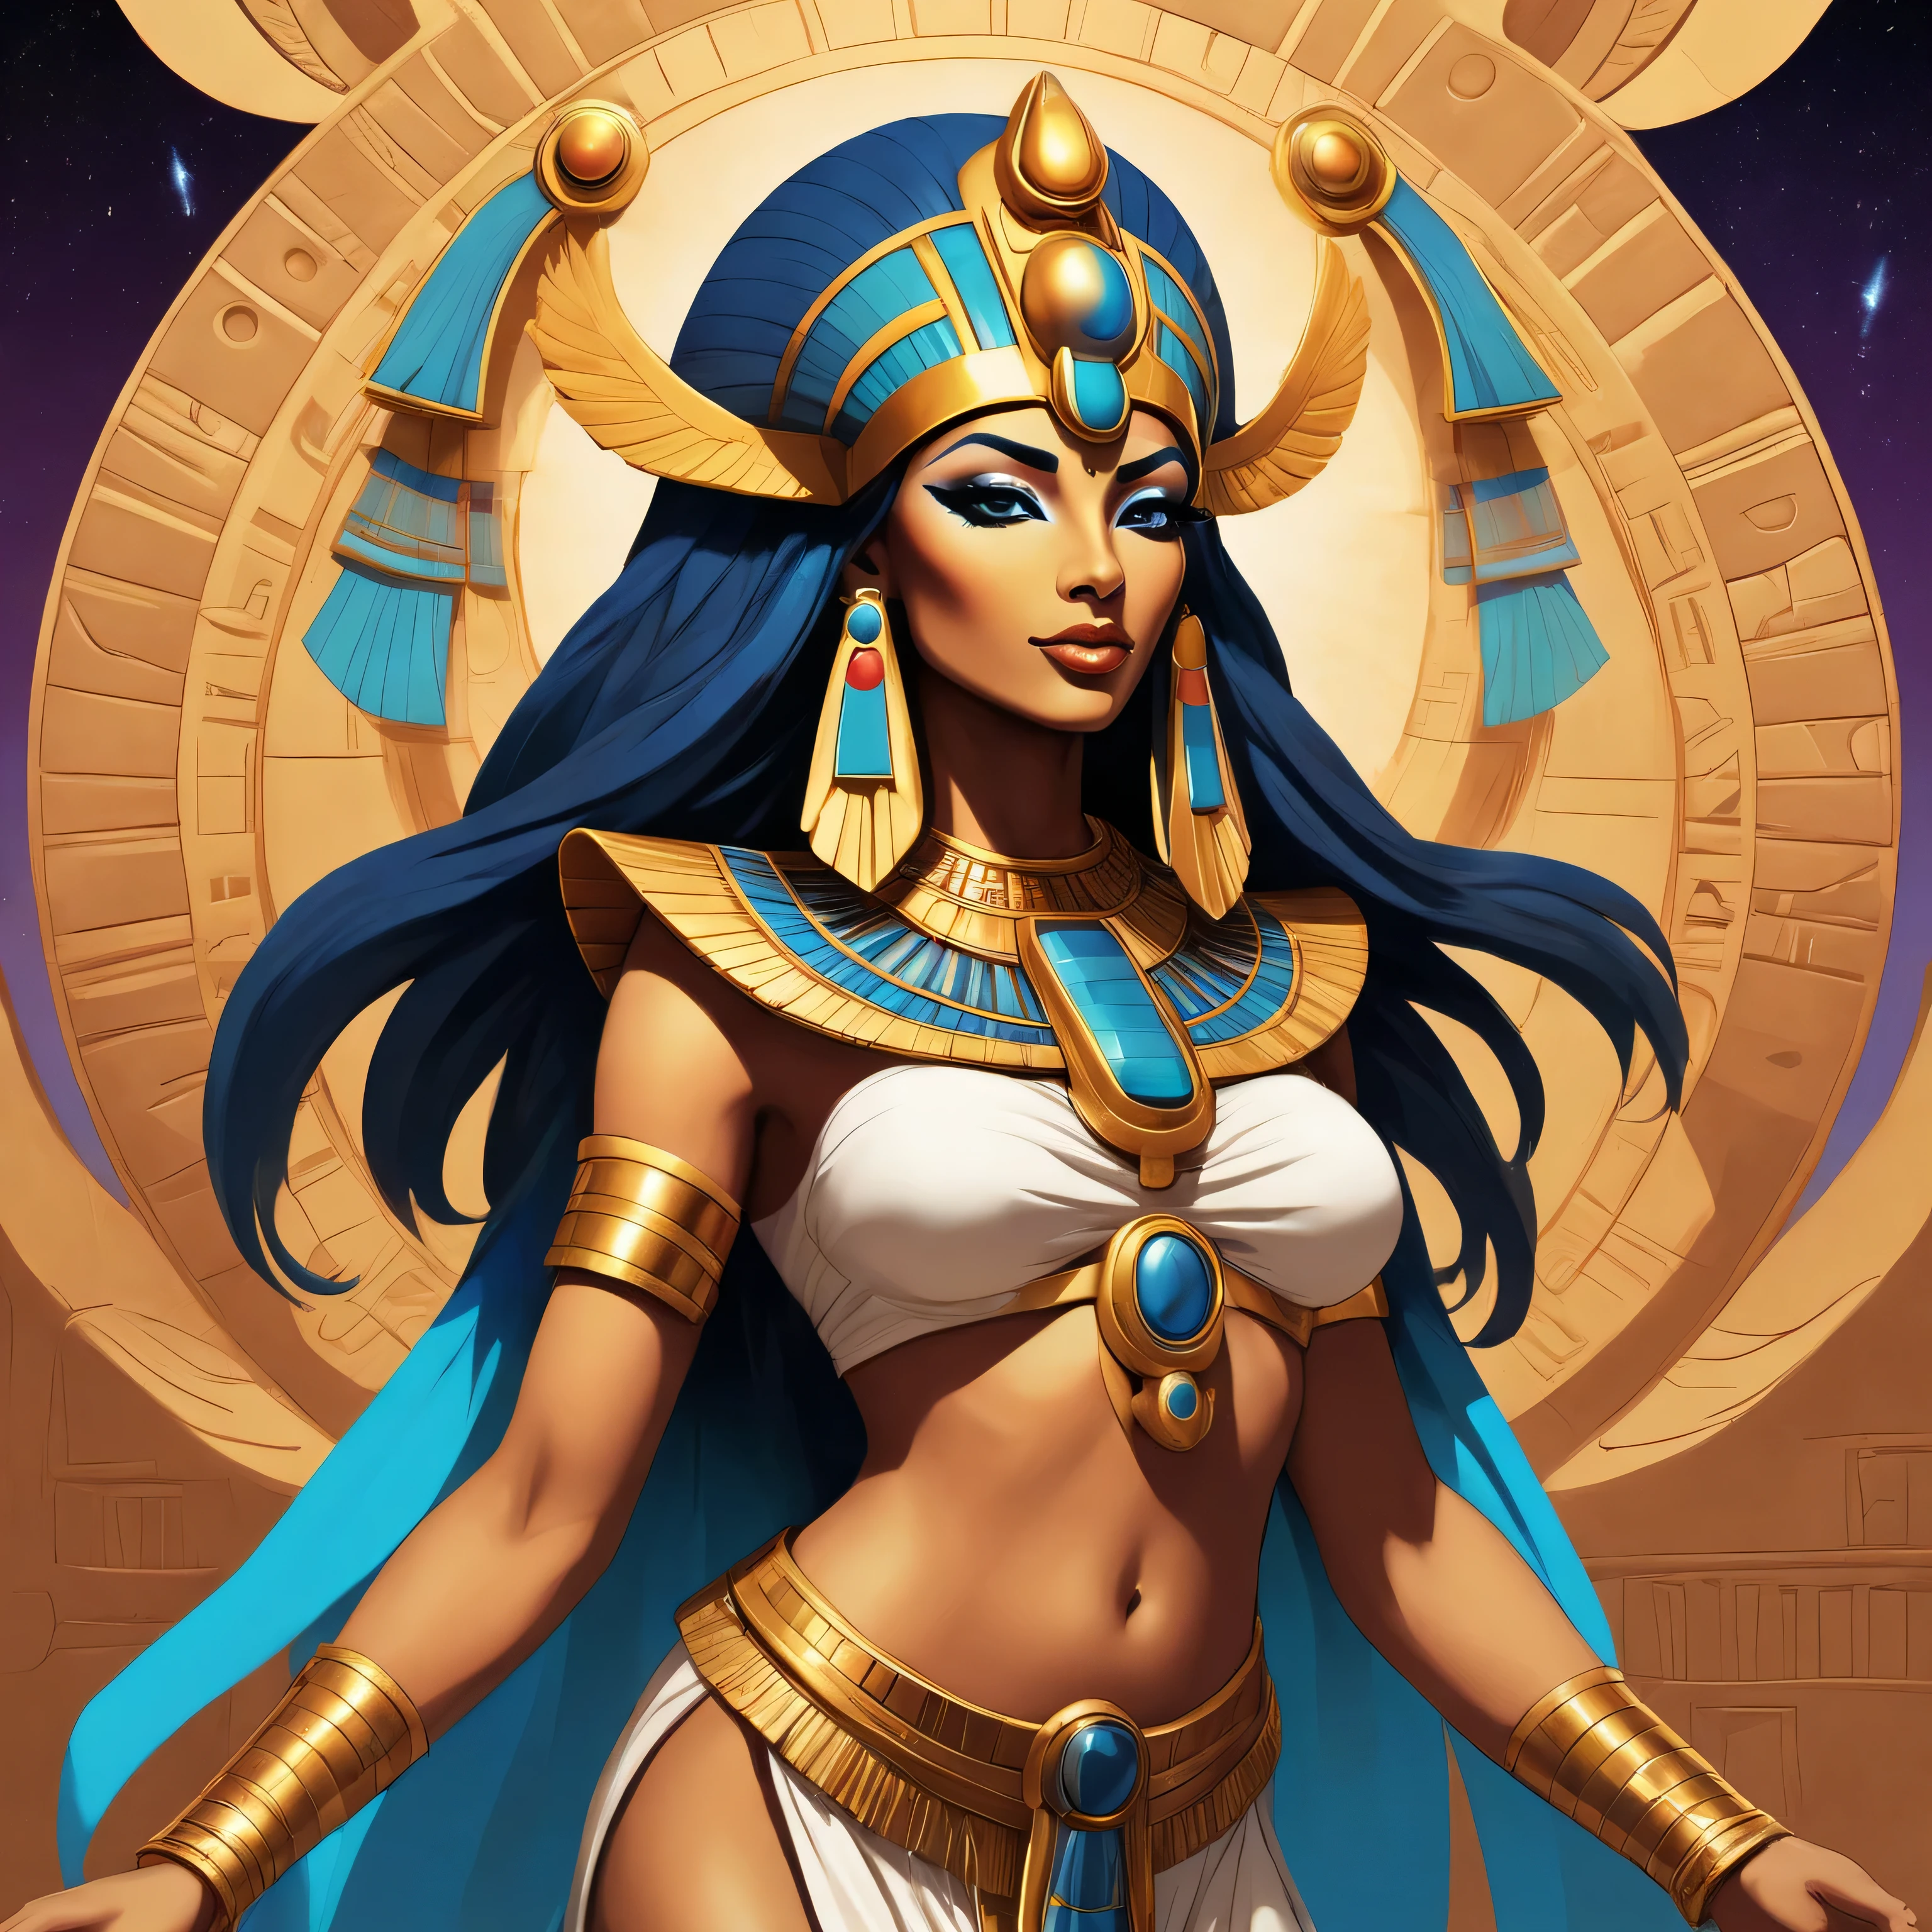 Создайте вдохновленное поп-артом изображение древнеегипетской богини Маат в стиле аниме и комиксов.. Используйте жирный шрифт, контрастные цвета и яркие, биолюминесцентные эффекты, чтобы изобразить ее в визуально поразительном виде., абстрактная композиция. Отдайте дань уважения концепции баланса и гармонии, которую она представляет, объединяя традиционные символы и современные, динамические элементы. Страстно воплотите сущность космической богини, чтобы пленить чувства зрителей и расширить их восприятие древней мифологии..